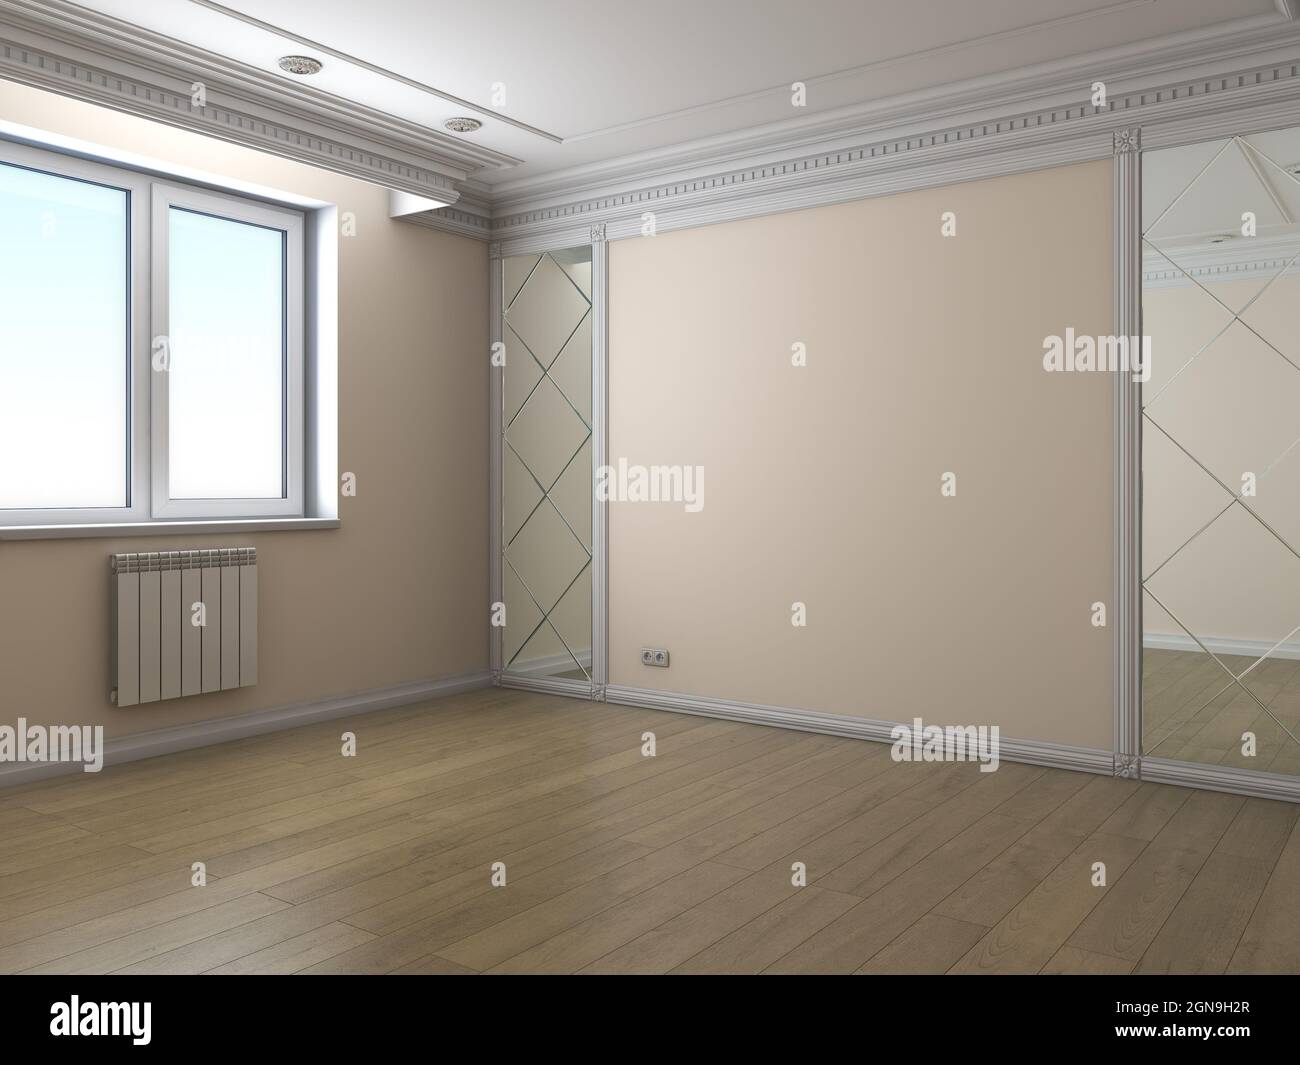 Coin intérieur vide avec fenêtre en plastique, murs beige, parquet, moulures blanches et deux miroirs. illustration 3d 3840 x 2880 Banque D'Images